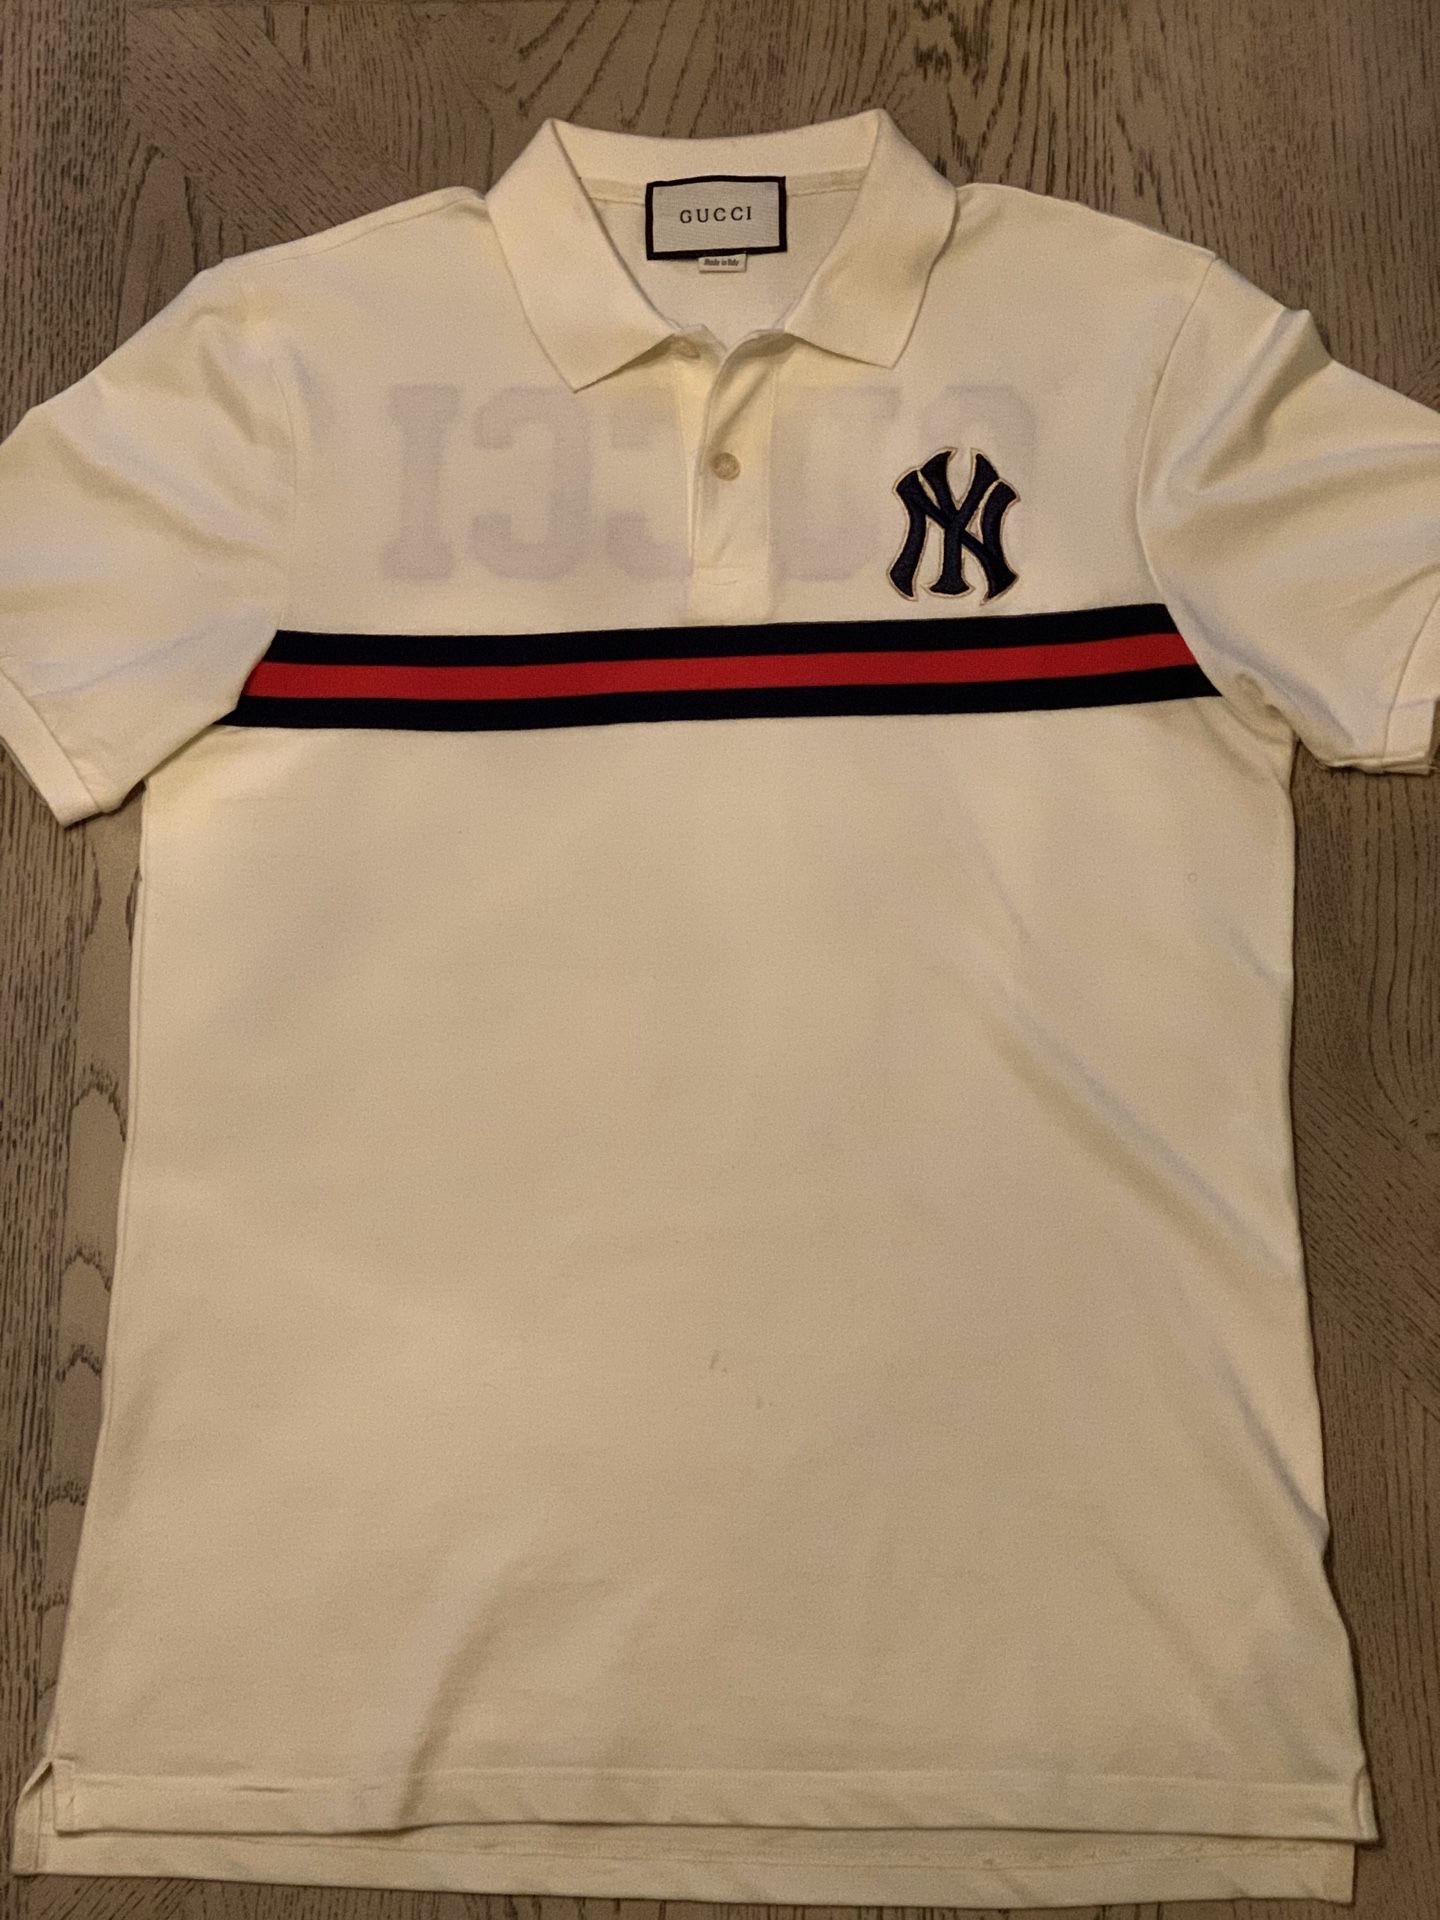 Ny Yankees Gucci Collar Shirt